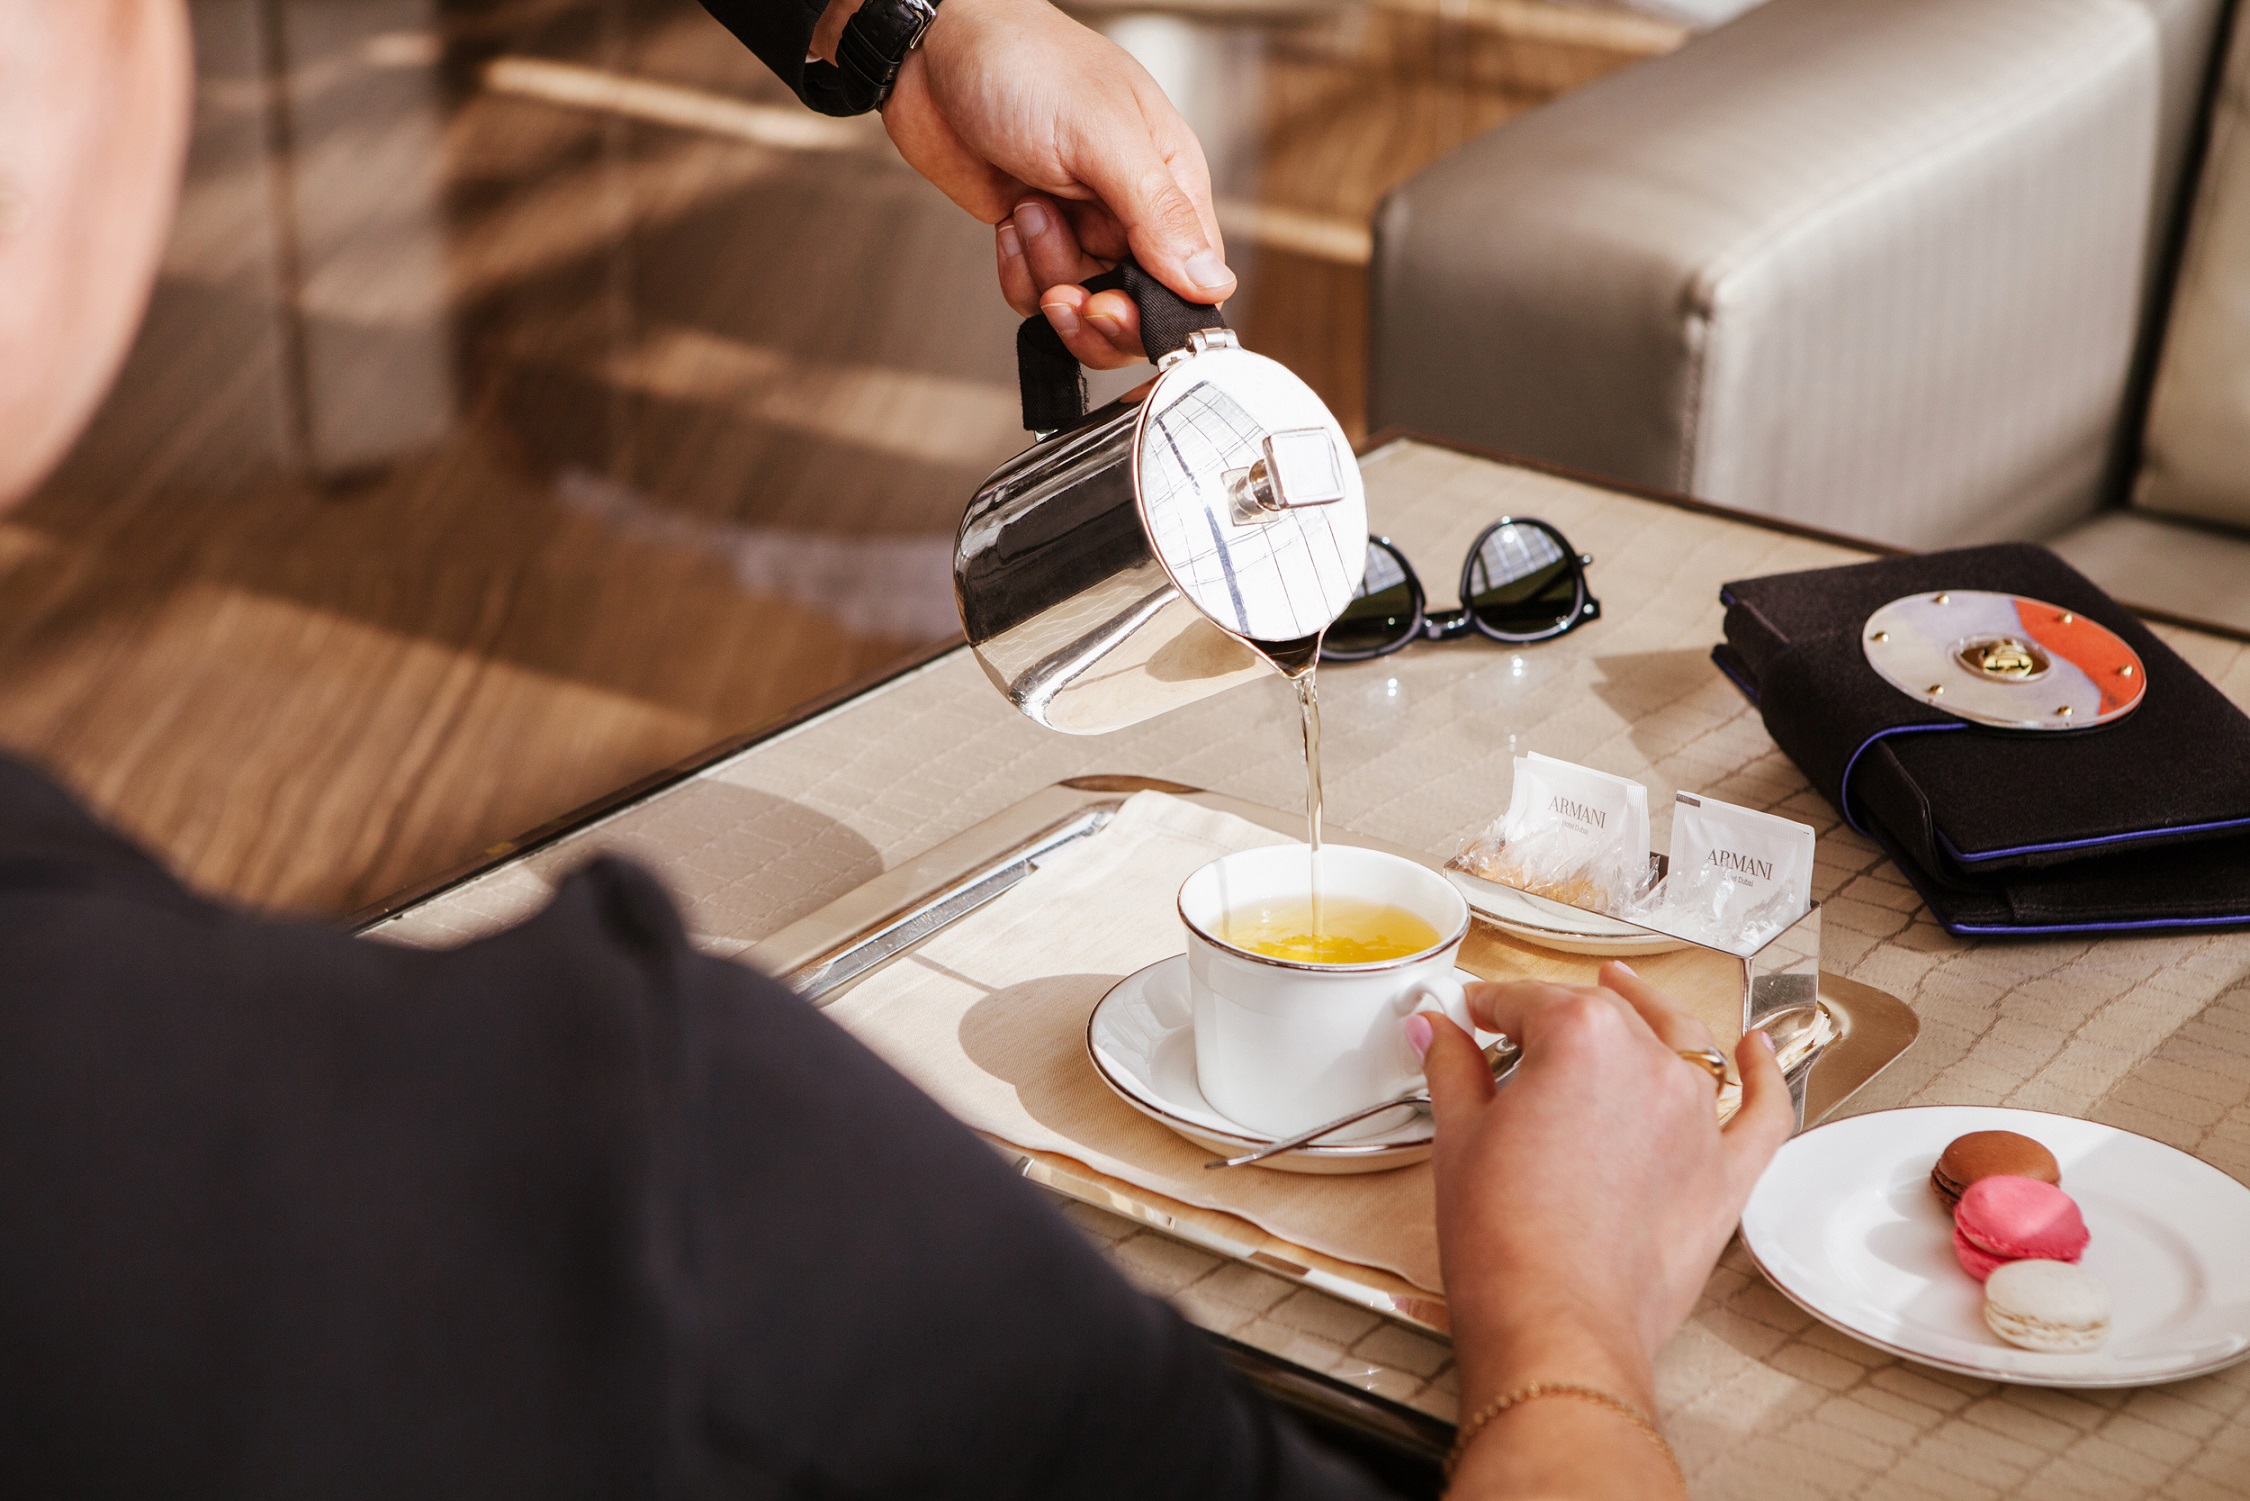 أمسيات الشاي مع الذهب 24 قيراط من أرماني لاونج